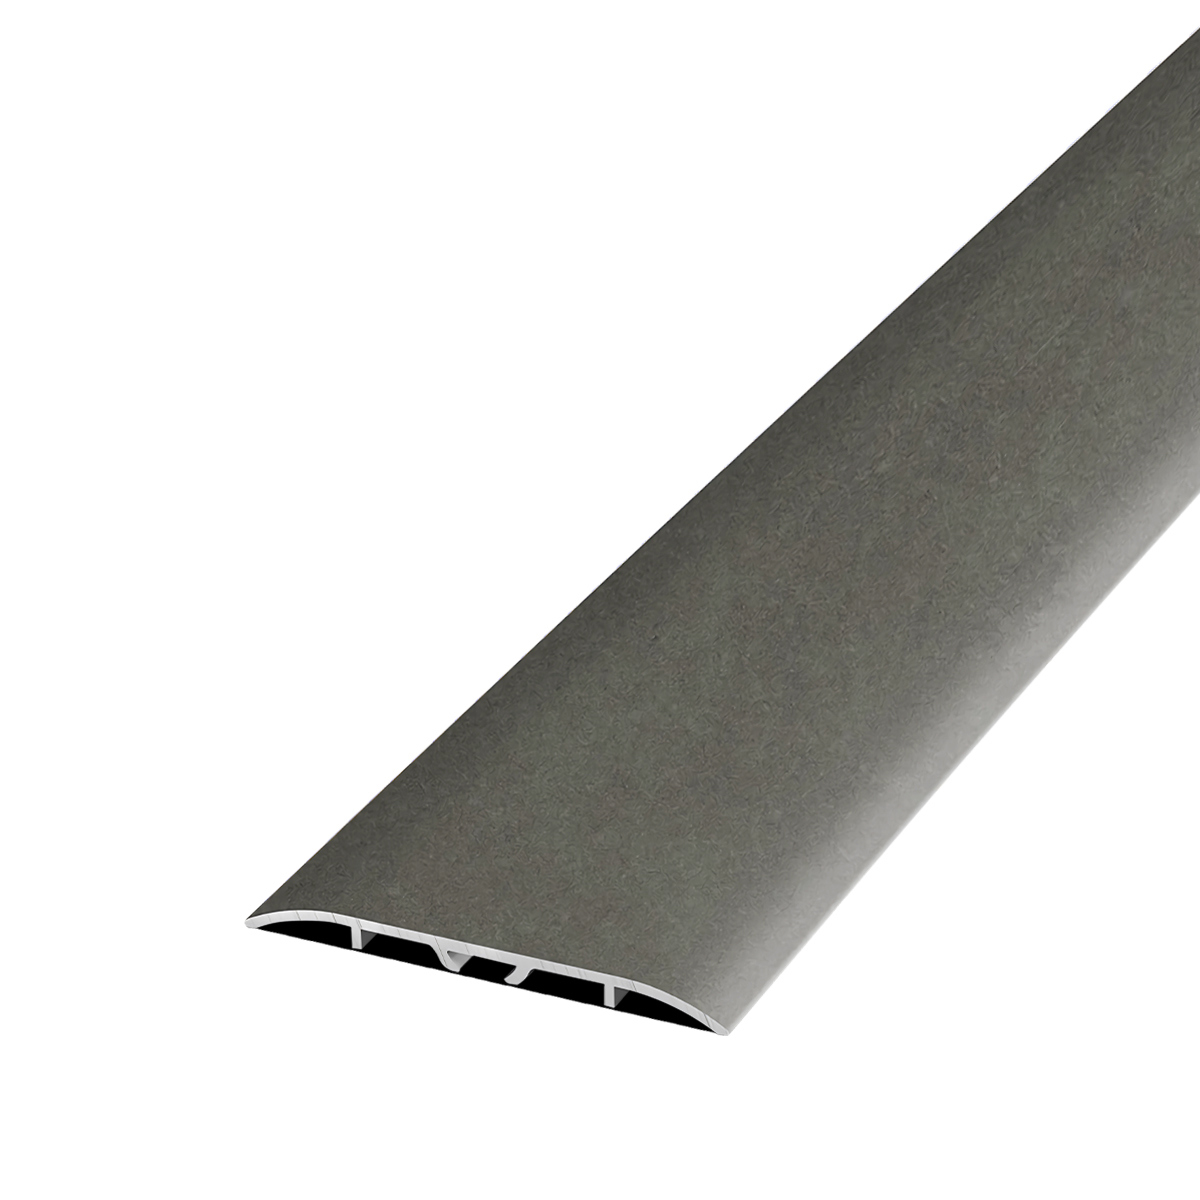 Порог для пола алюминиевый одноуровневый 900х60 мм бетон темный по цене .